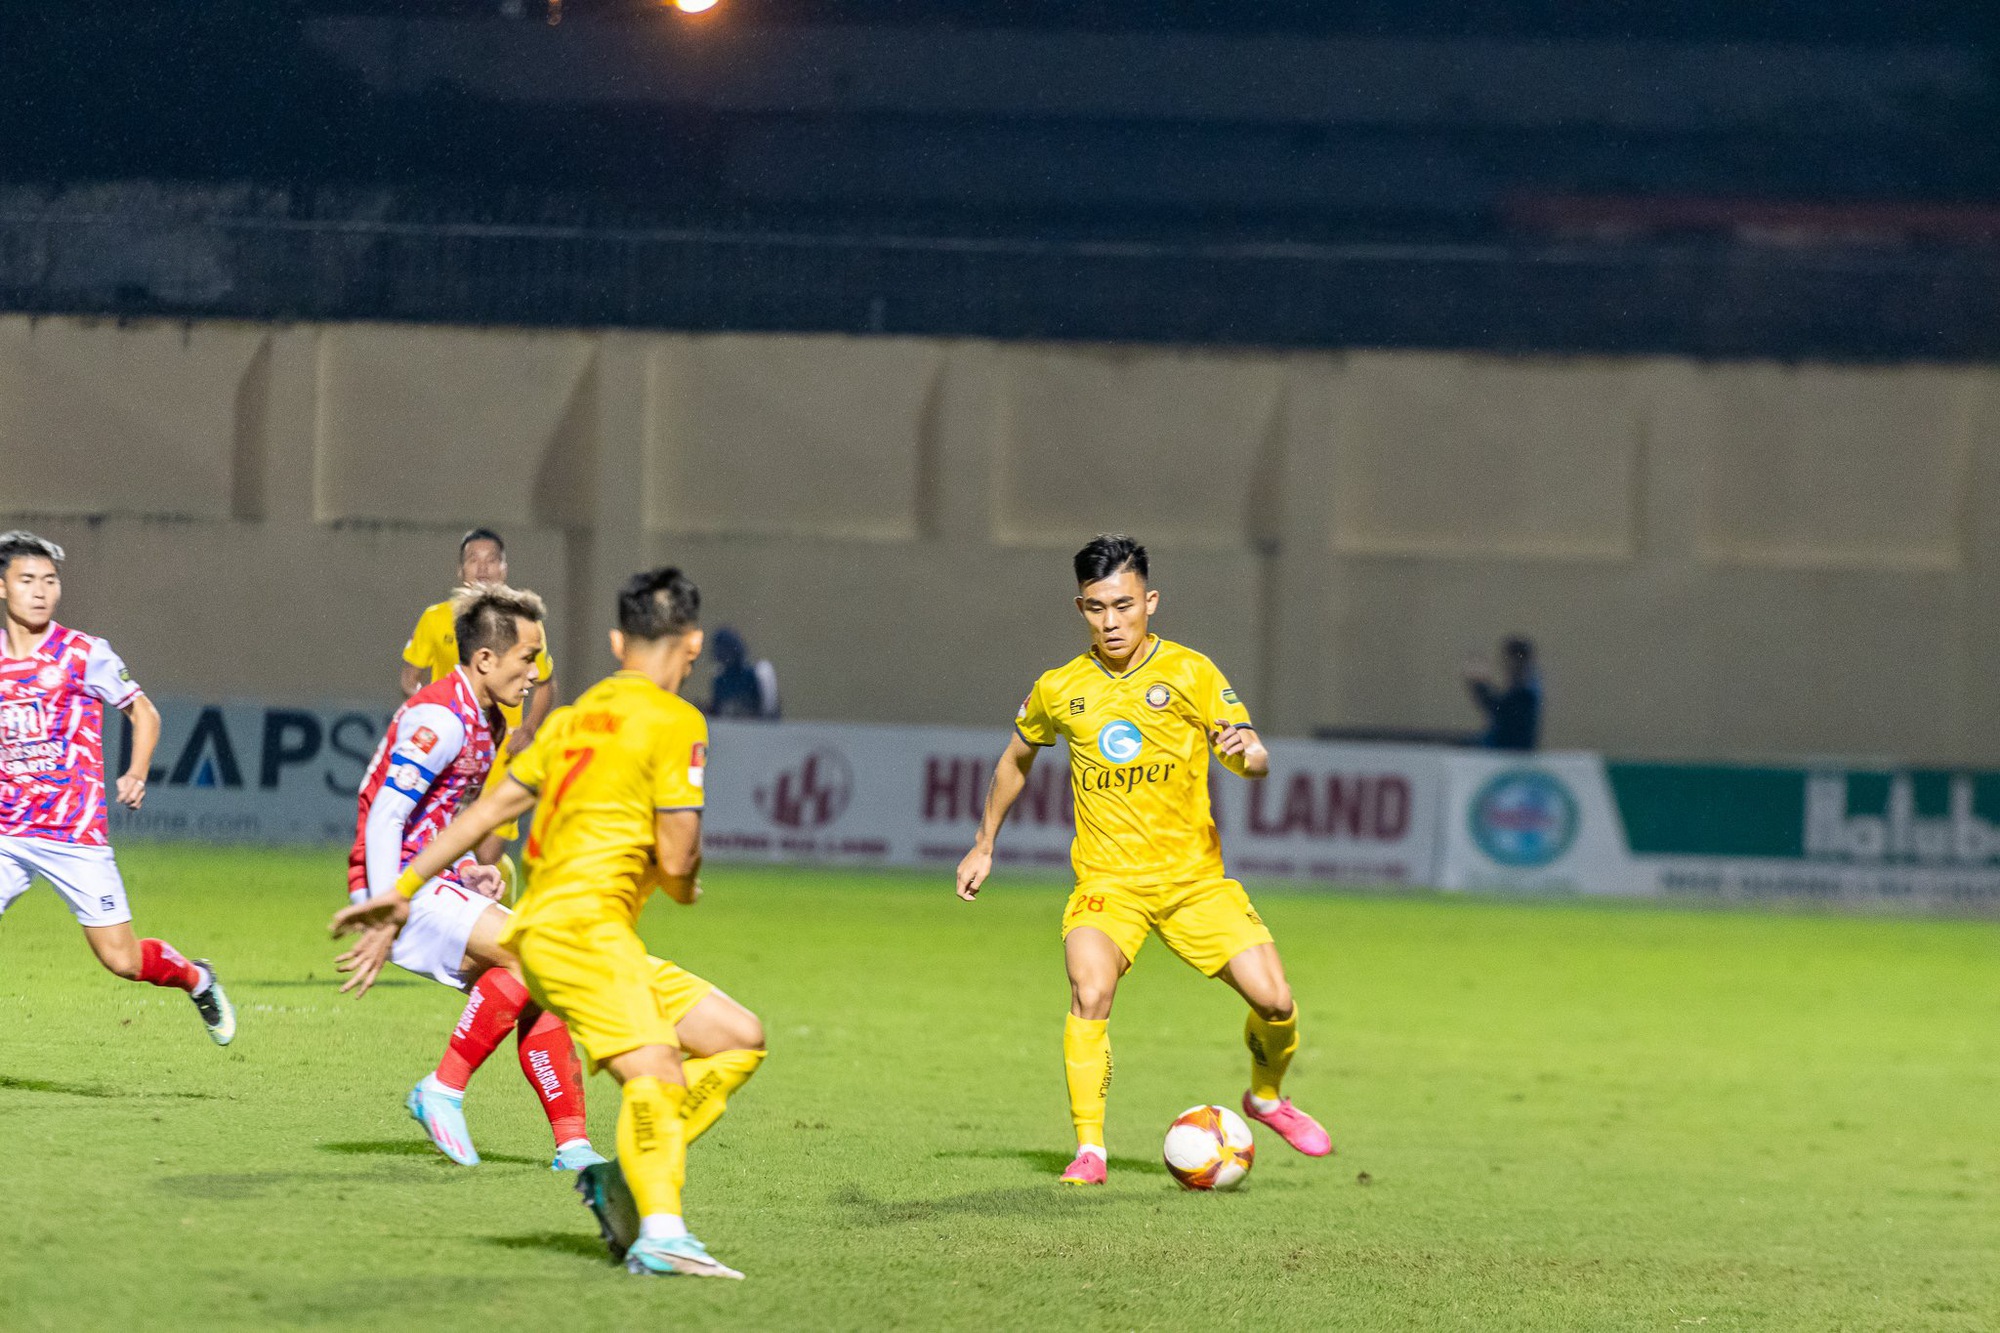 Đông Á Thanh Hoá chia điểm trên sân nhà với TP Hồ Chí Minh trong trận đấu thiếu người - Ảnh 1.